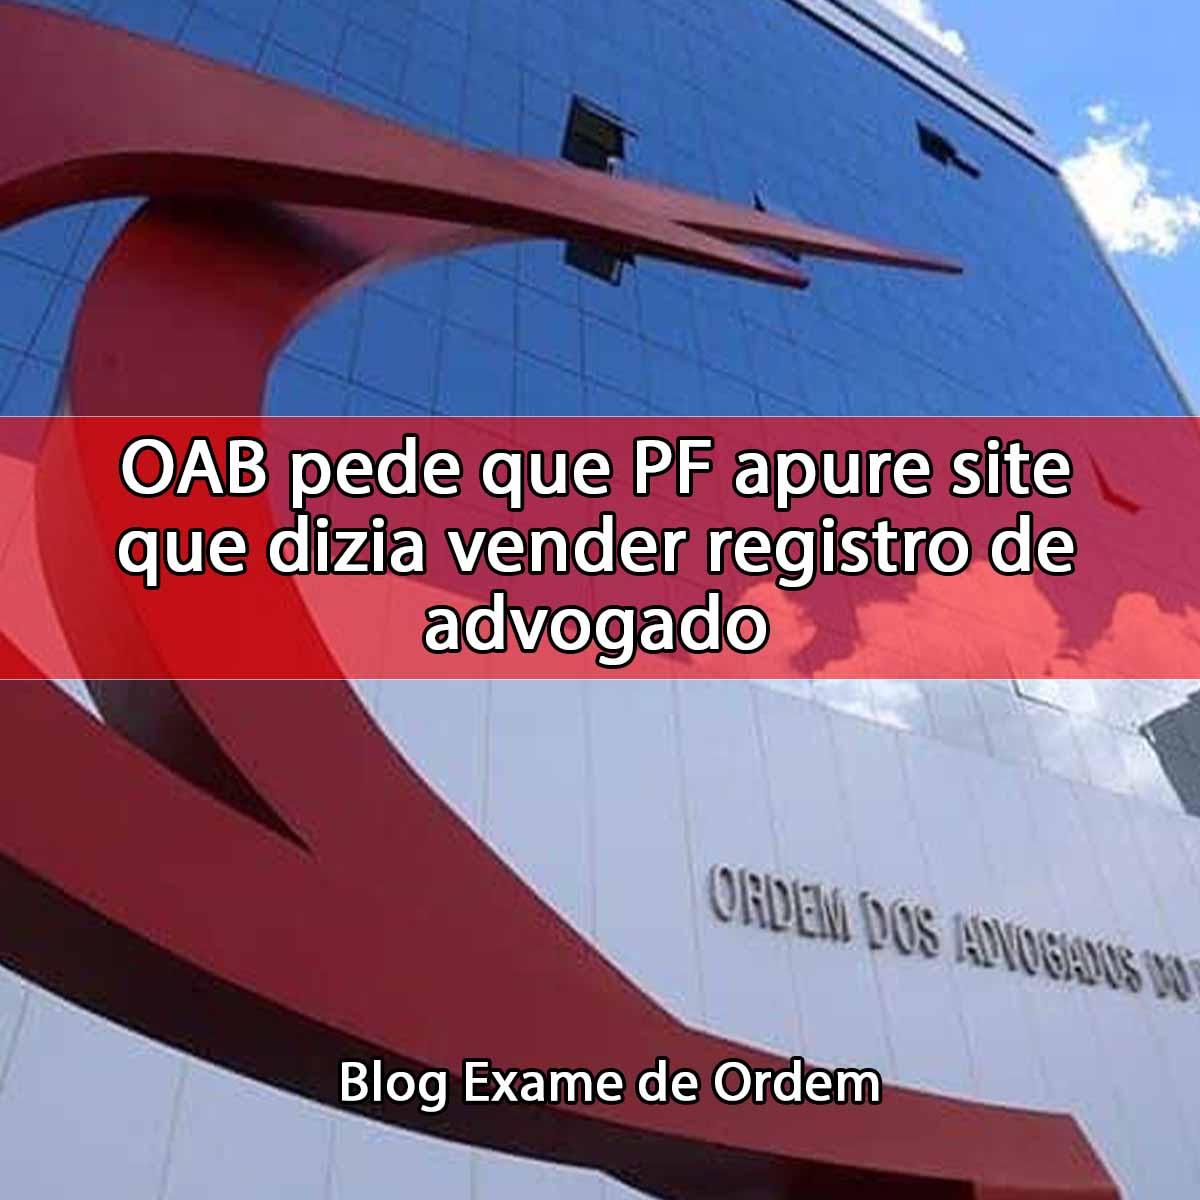 OAB pede que PF apure site que dizia vender registro de advogado